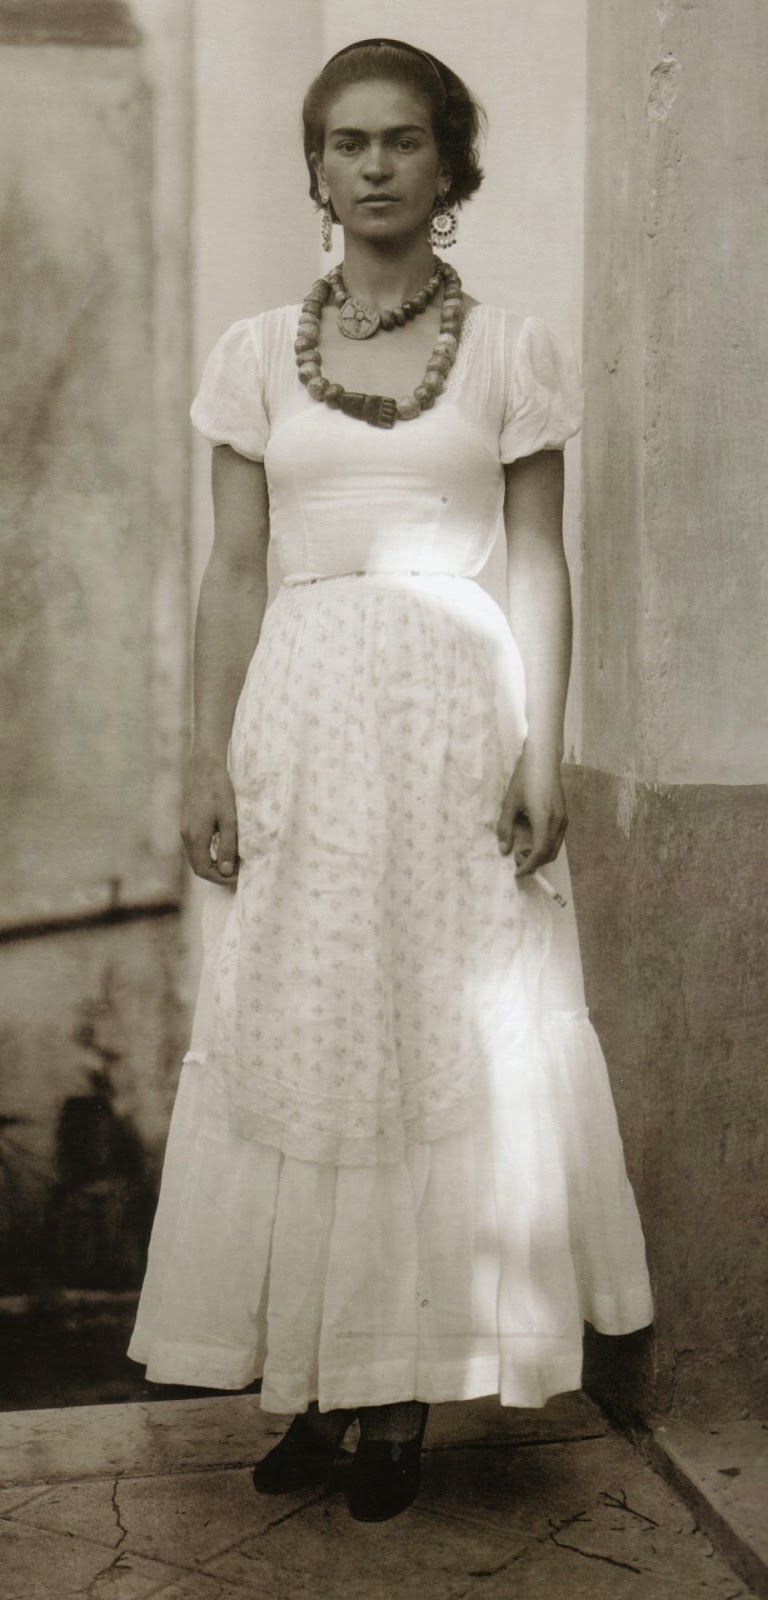 Amazing Historical Photo of Frida Kahlo in 1929 